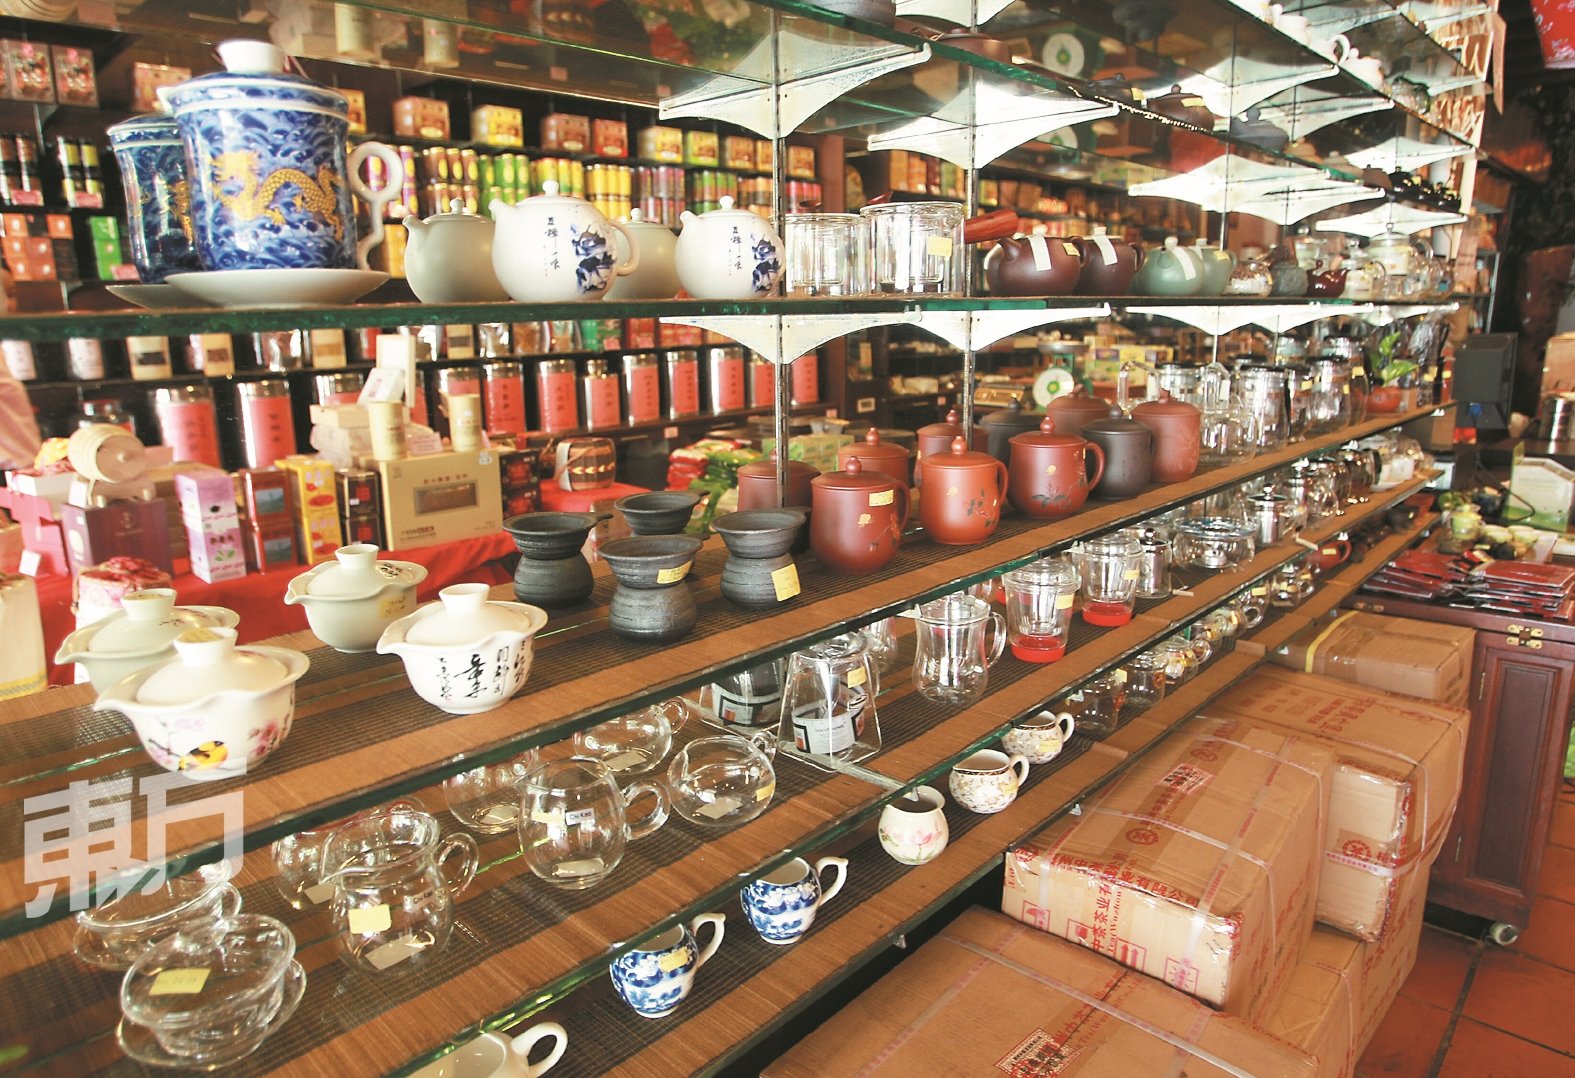 除了高品质和精美包装的茶叶，广汇丰也出售各式各样的精美茶具，琳琅满目的茶具任君挑选。